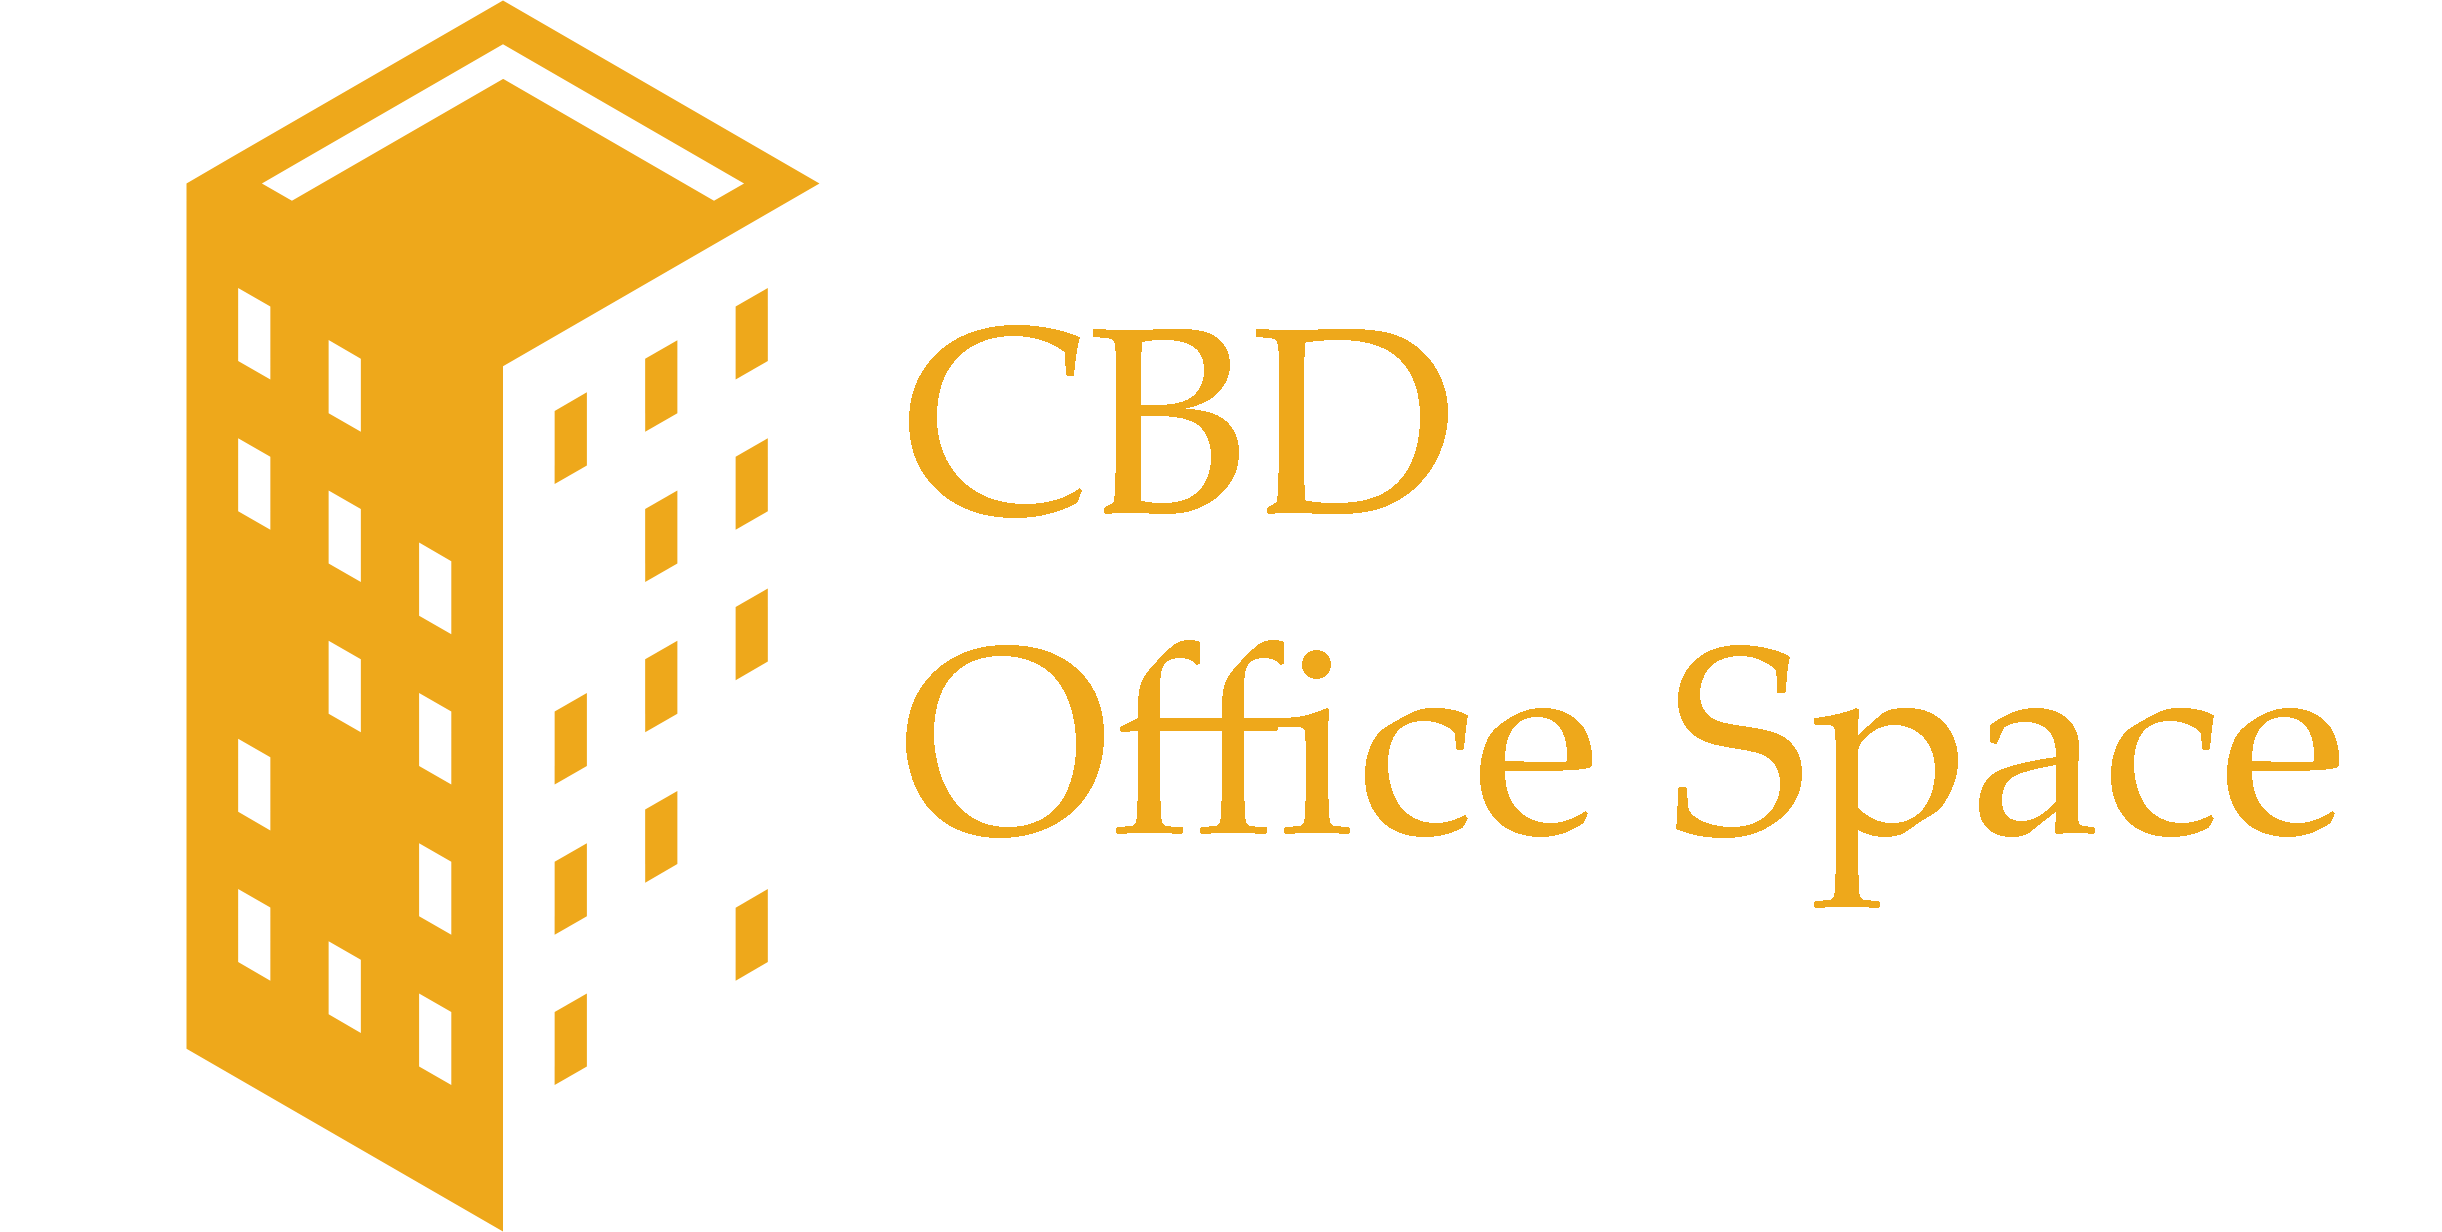 CBD Office Space